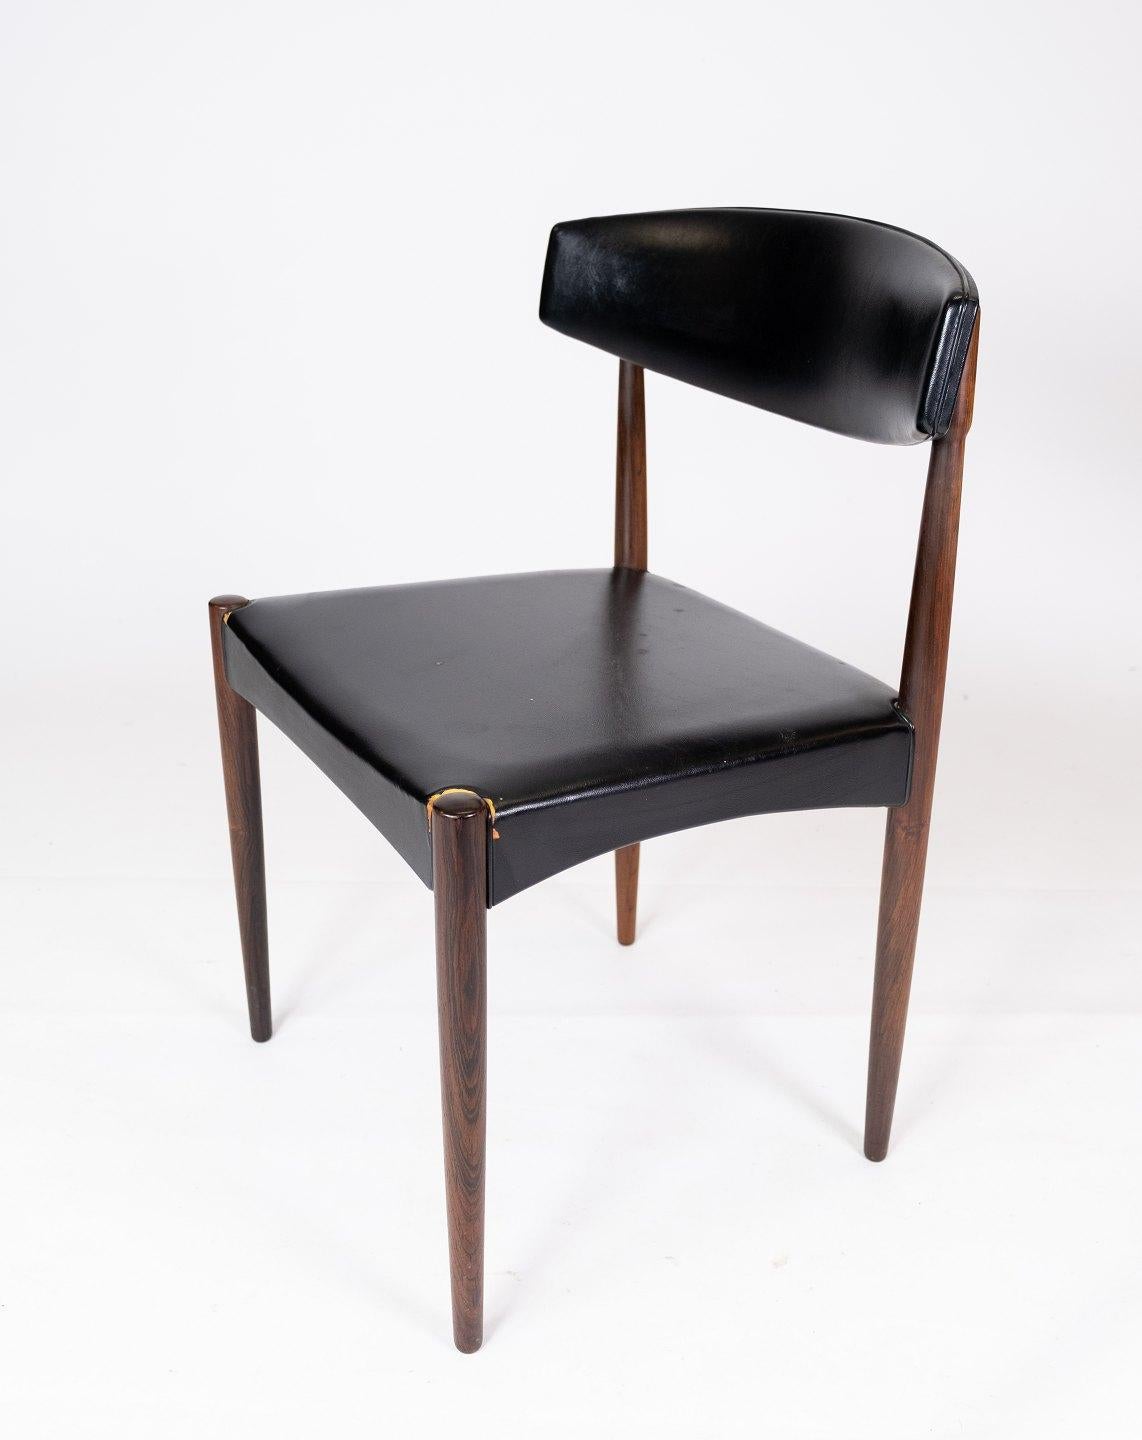 Cet ensemble de quatre chaises de salle à manger est un bel exemple de design danois des années 1960. Les chaises sont fabriquées en bois de rose, un bois exclusif connu pour sa couleur riche et son grain magnifique.

Le design Eleg associé au